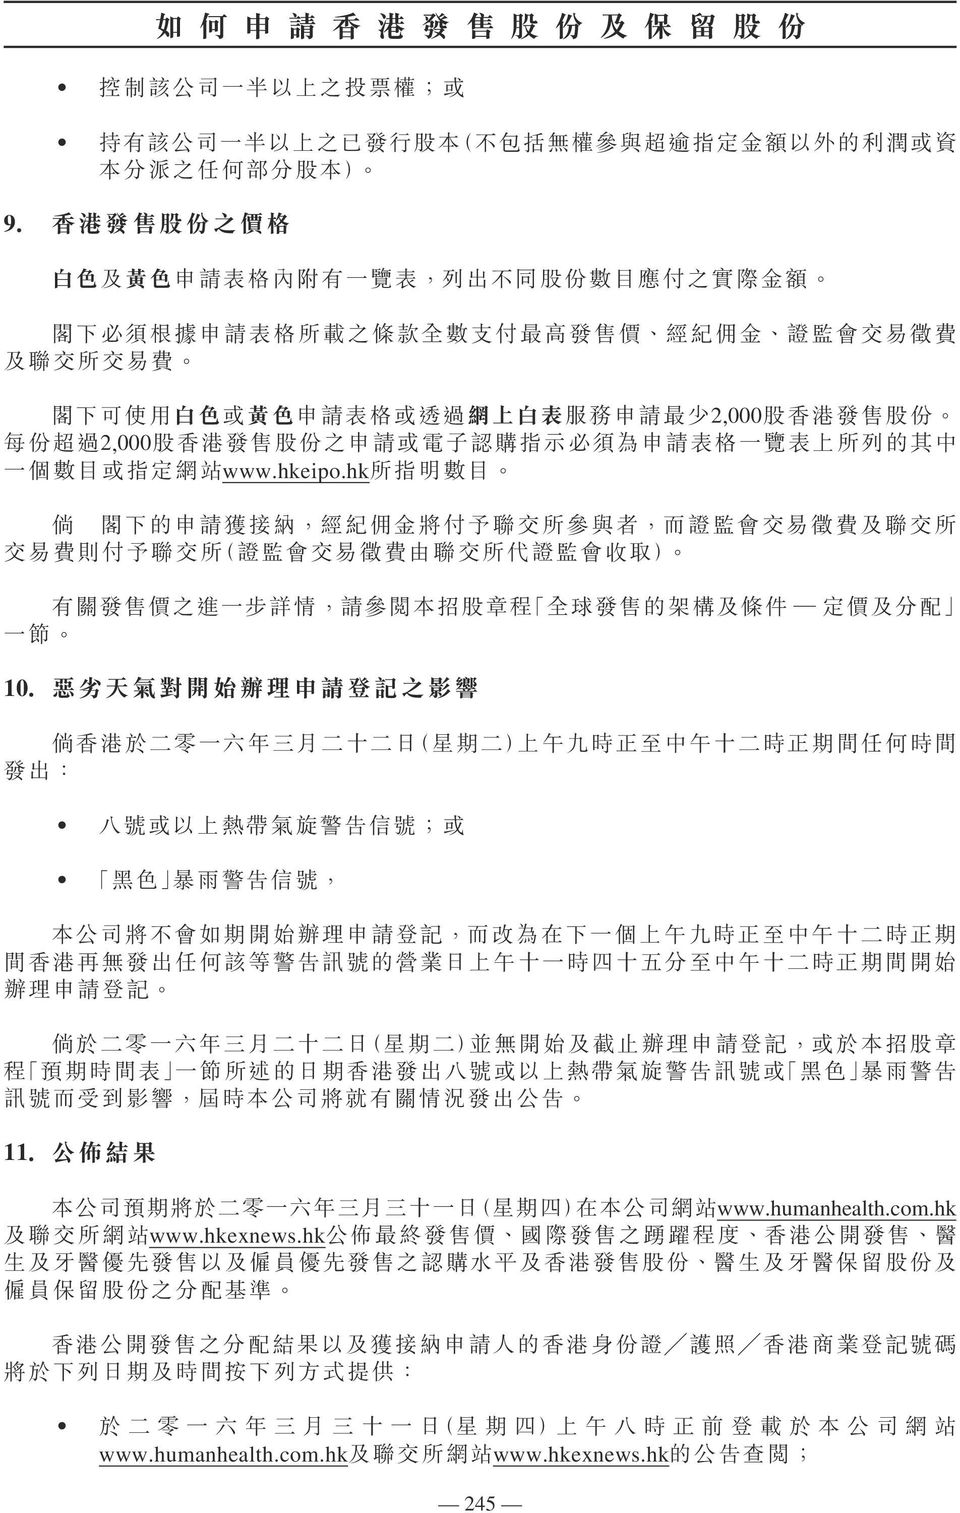 超 過 2,000 股 香 港 發 售 股 份 之 申 請 或 電 子 認 購 指 示 必 須 為 申 請 表 格 一 覽 表 上 所 列 的 其 中 一 個 數 目 或 指 定 網 站 www.hkeipo.